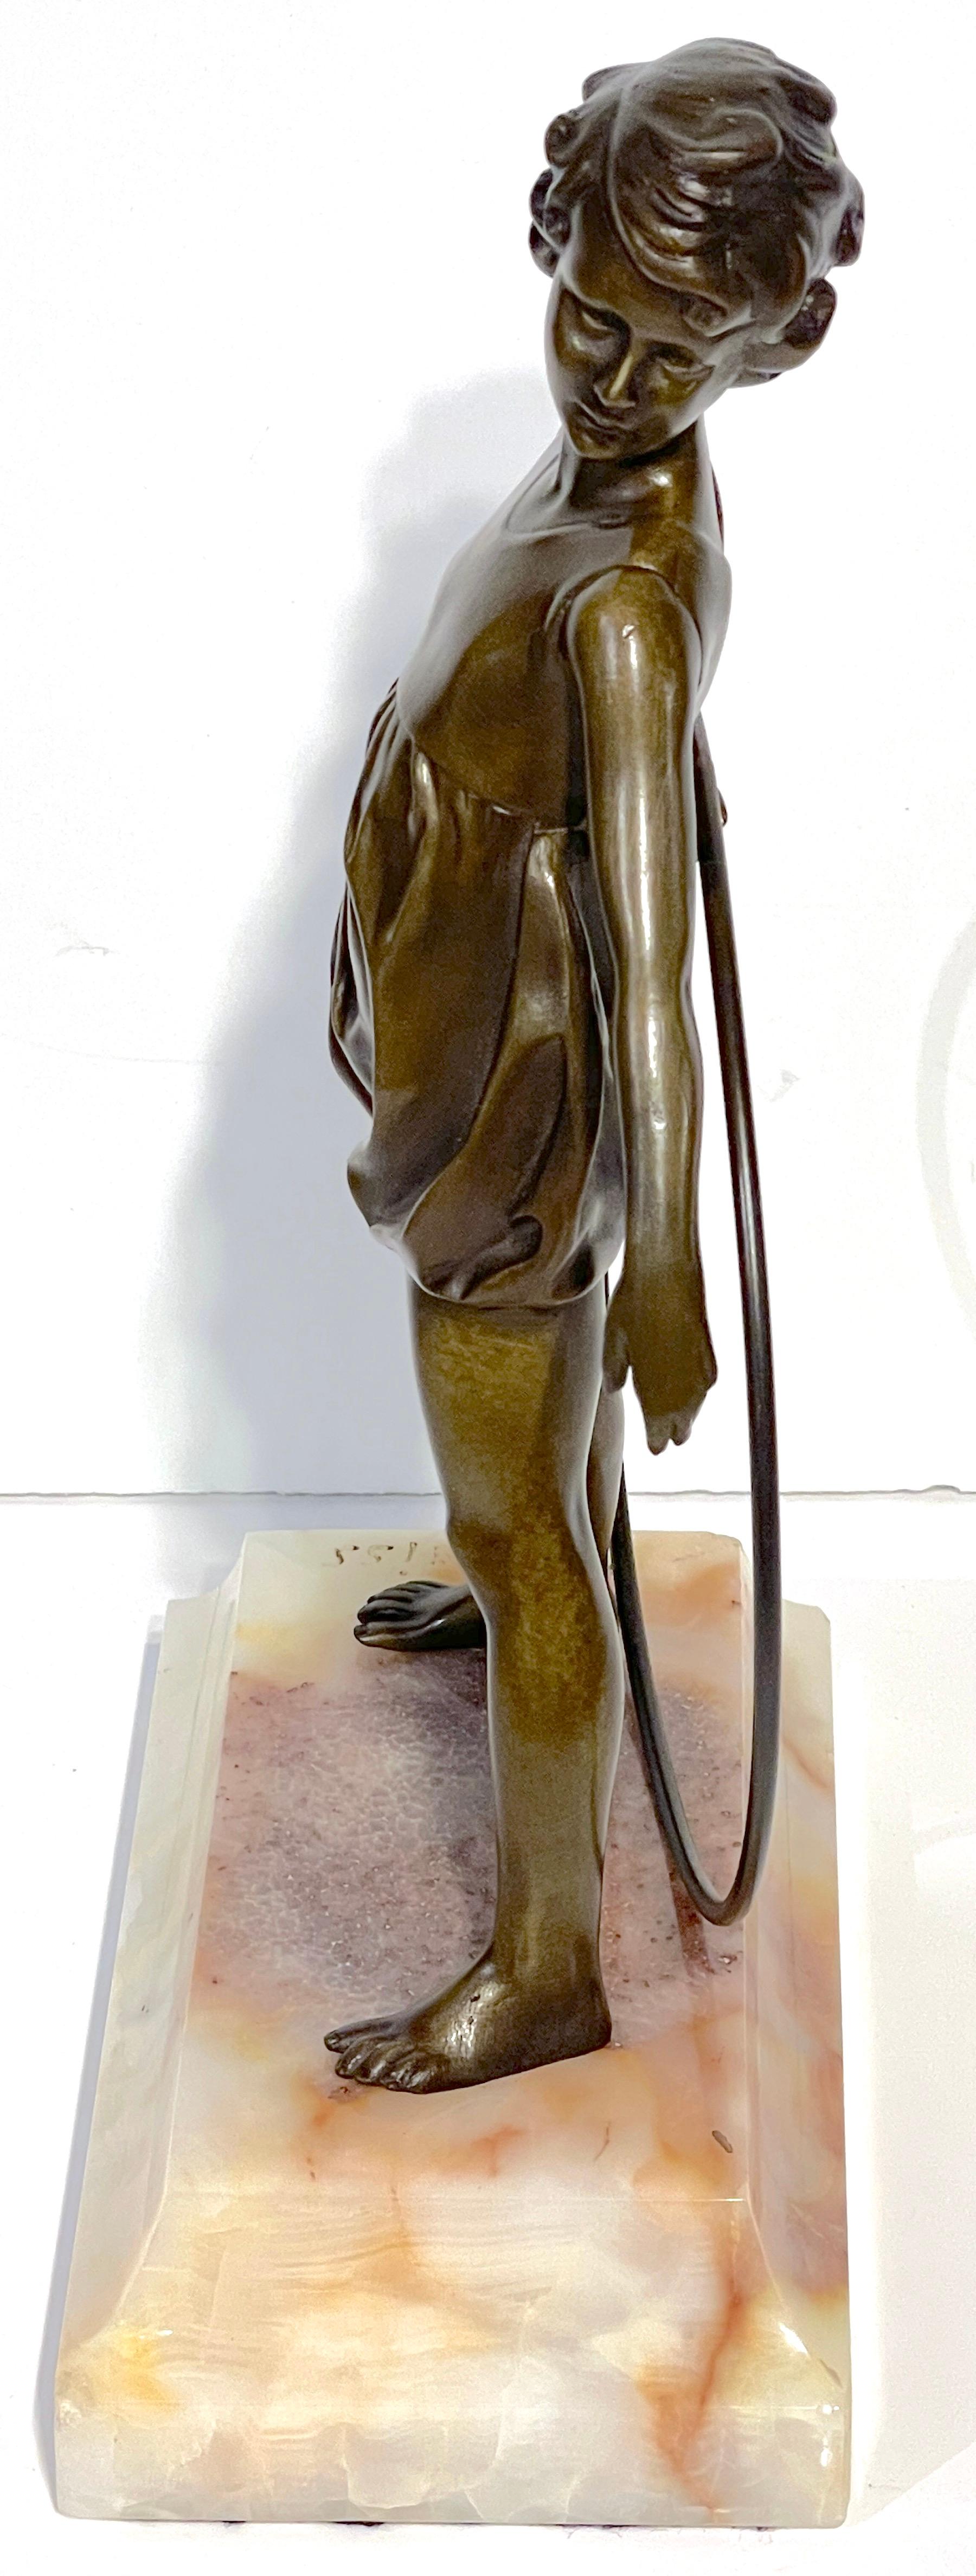 'Hoop Girl' Art Deco Bronze Sculpture Signed Ferdinand Preiss (1882-1943) For Sale 6